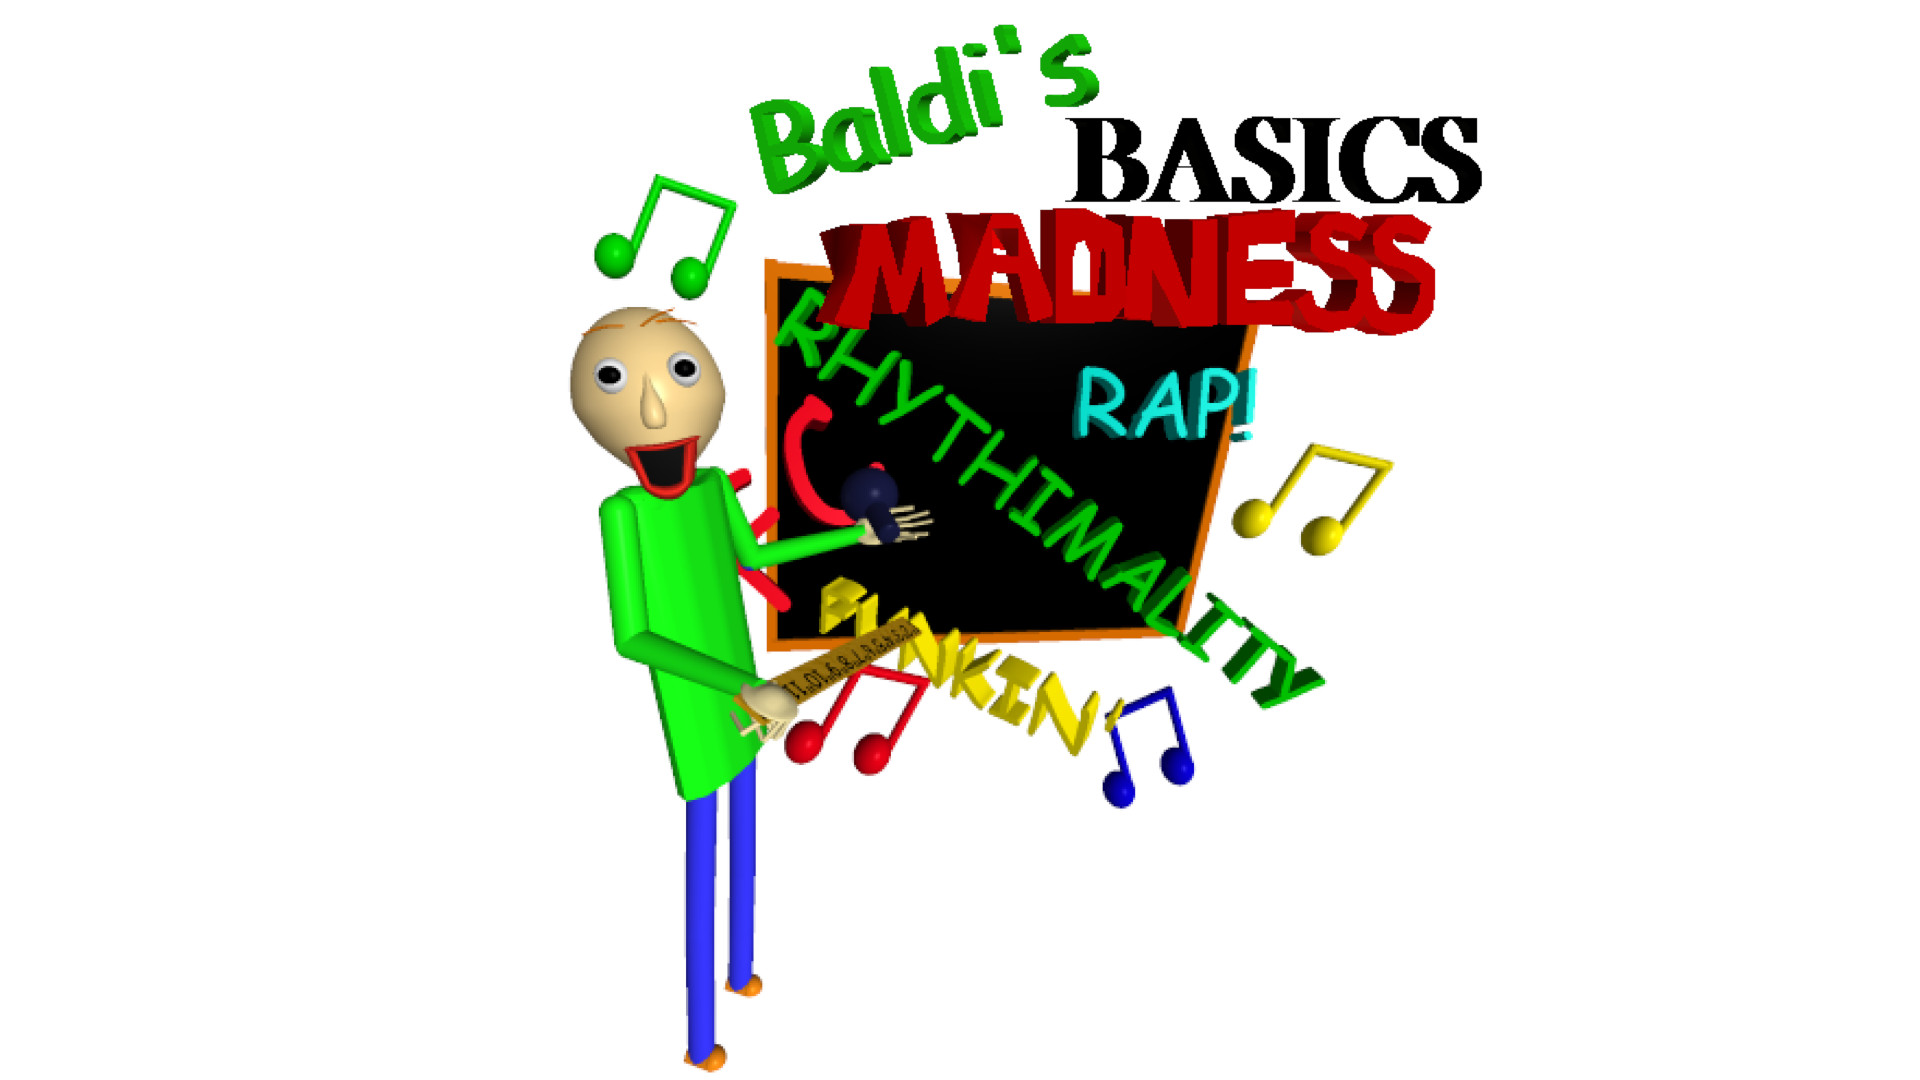 Fnf baldi. Friday Night Funkin Baldi's Basics. Adobe Flash Baldi. Baldi's Basics Demo 1.1.